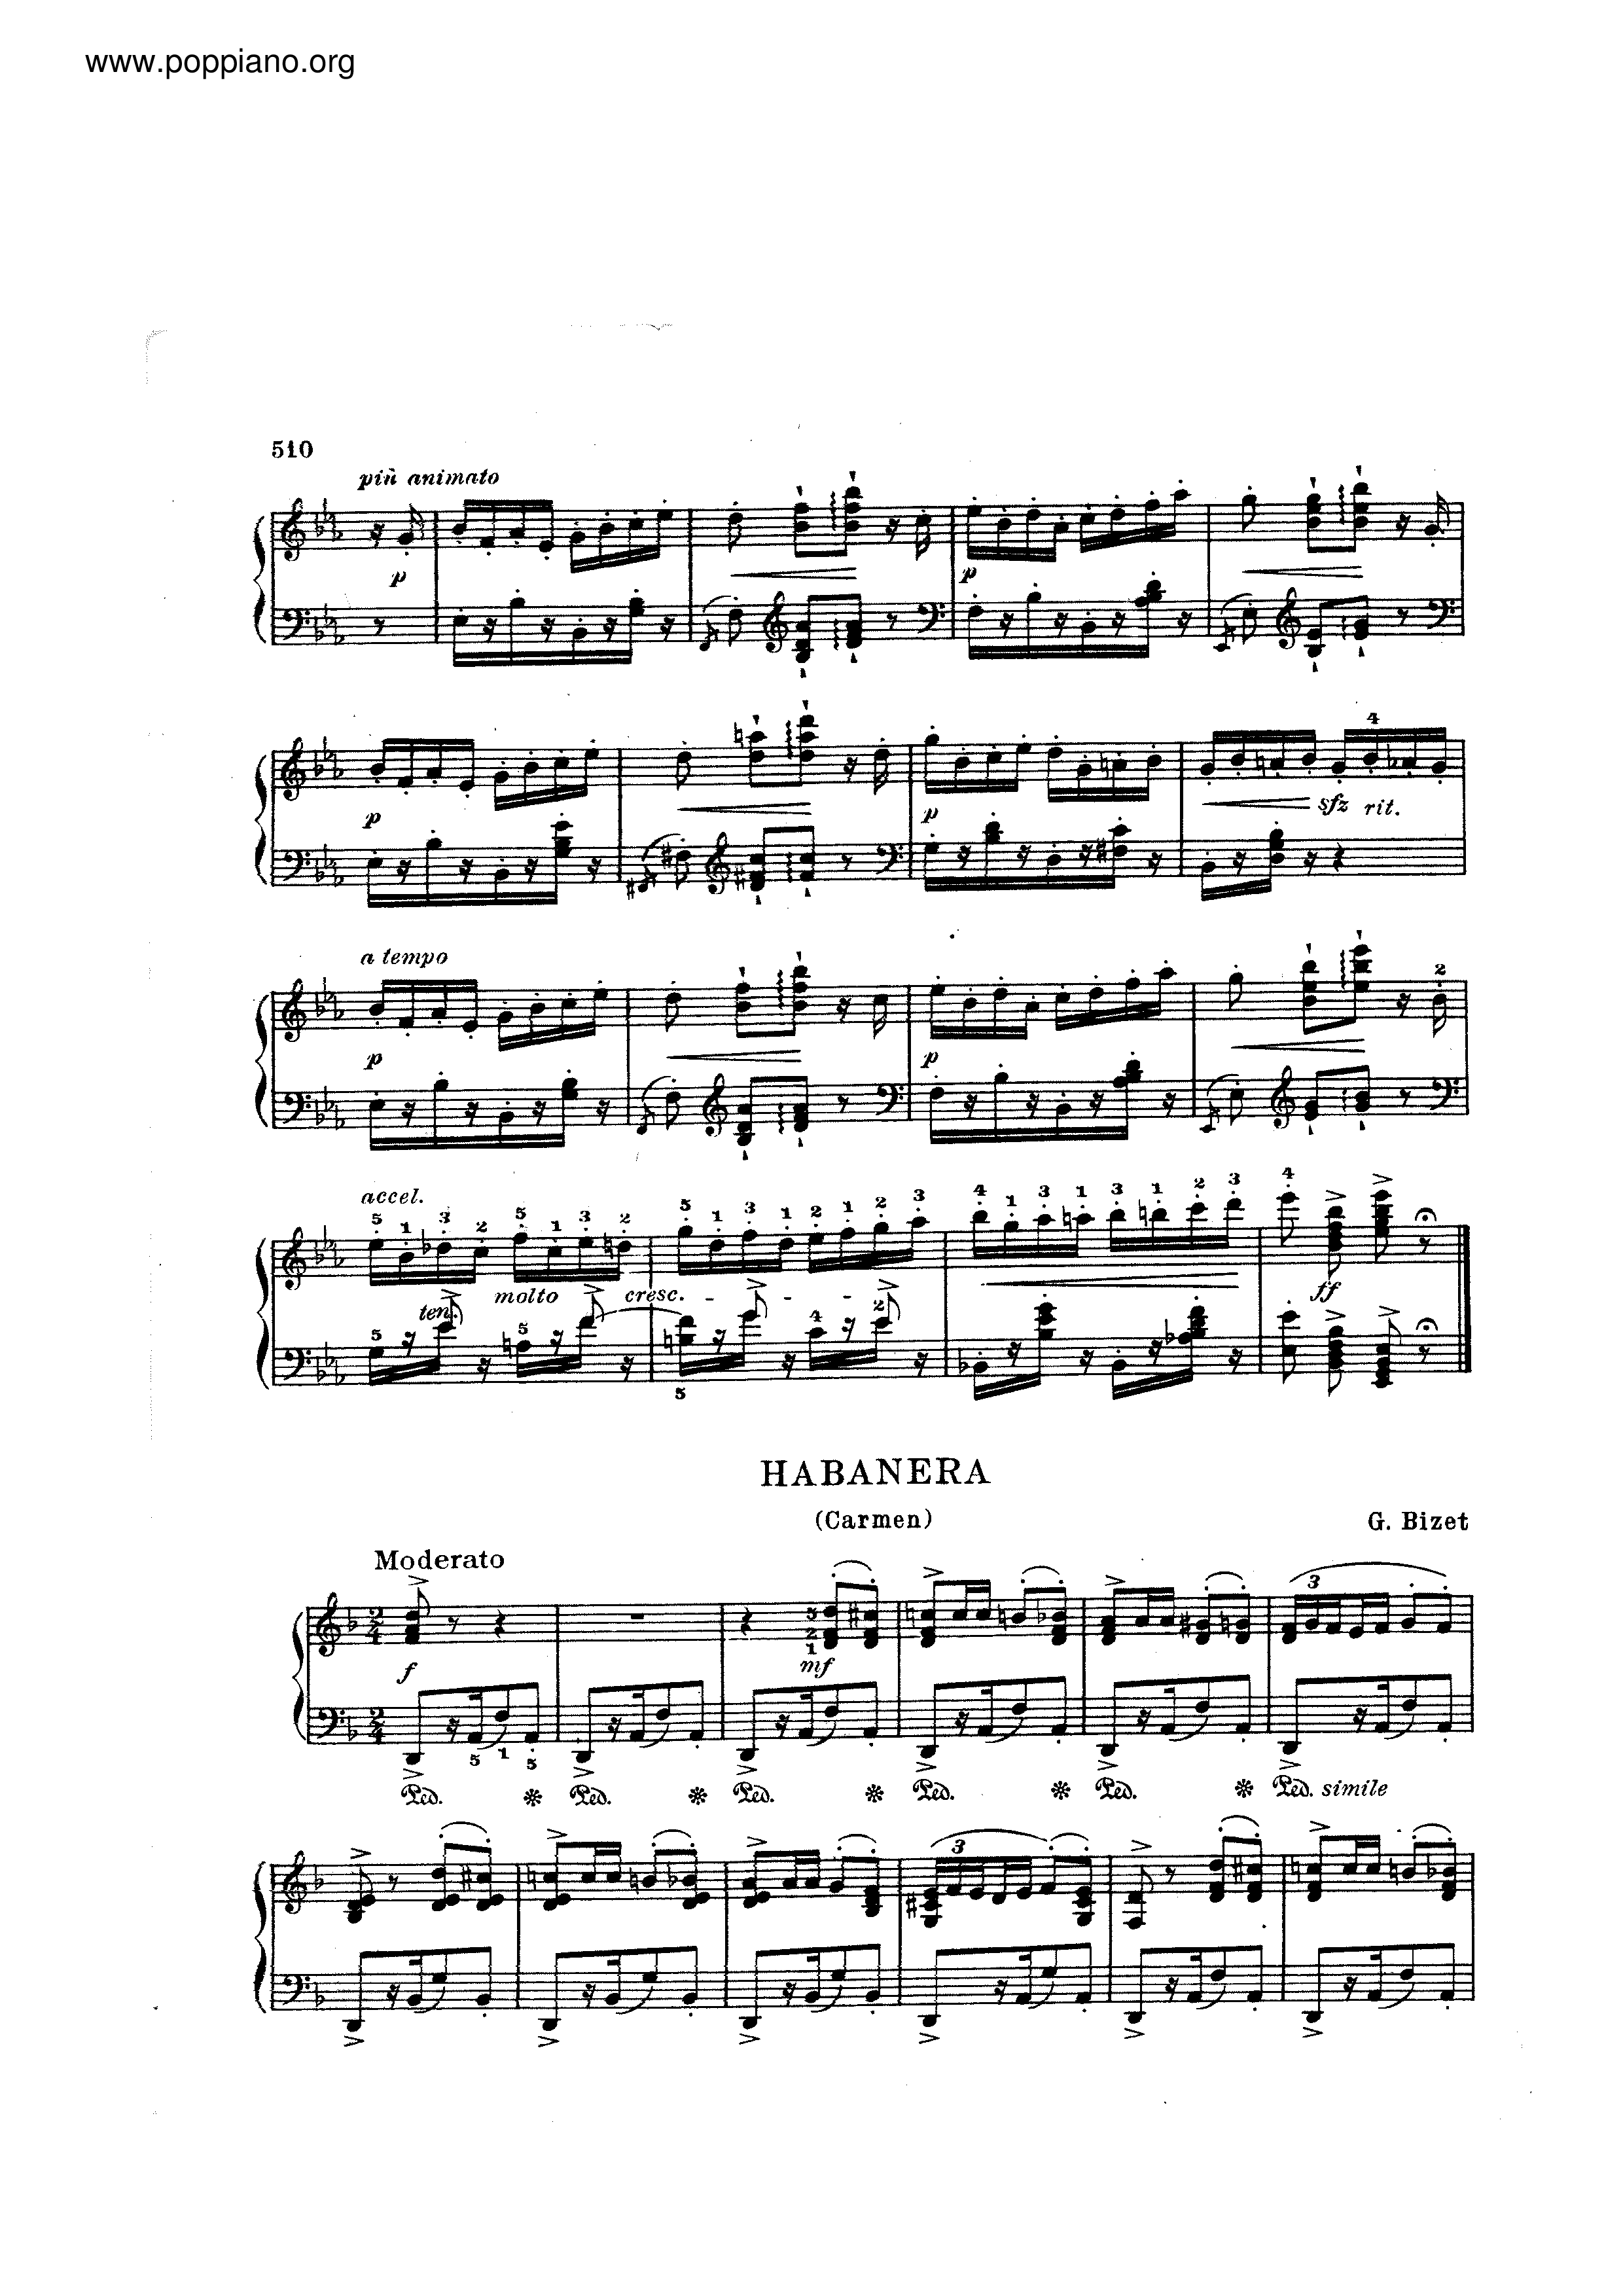 Carmen - Habanera琴谱